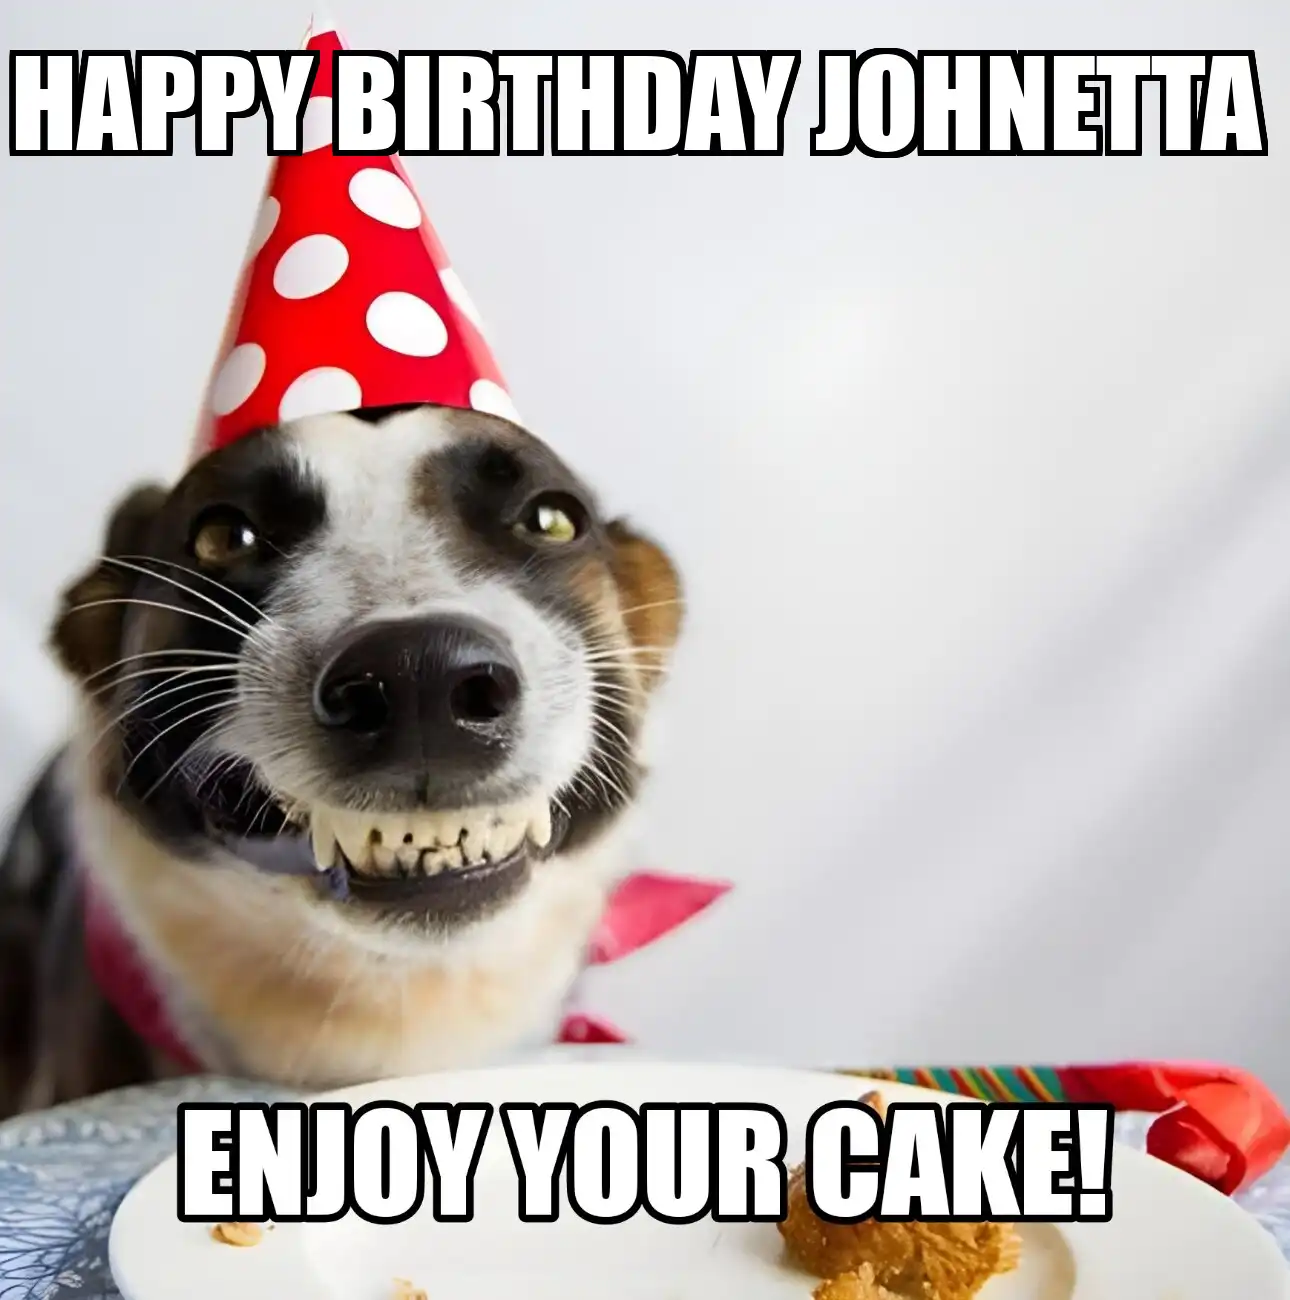 Happy Birthday Johnetta Enjoy Your Cake Dog Meme